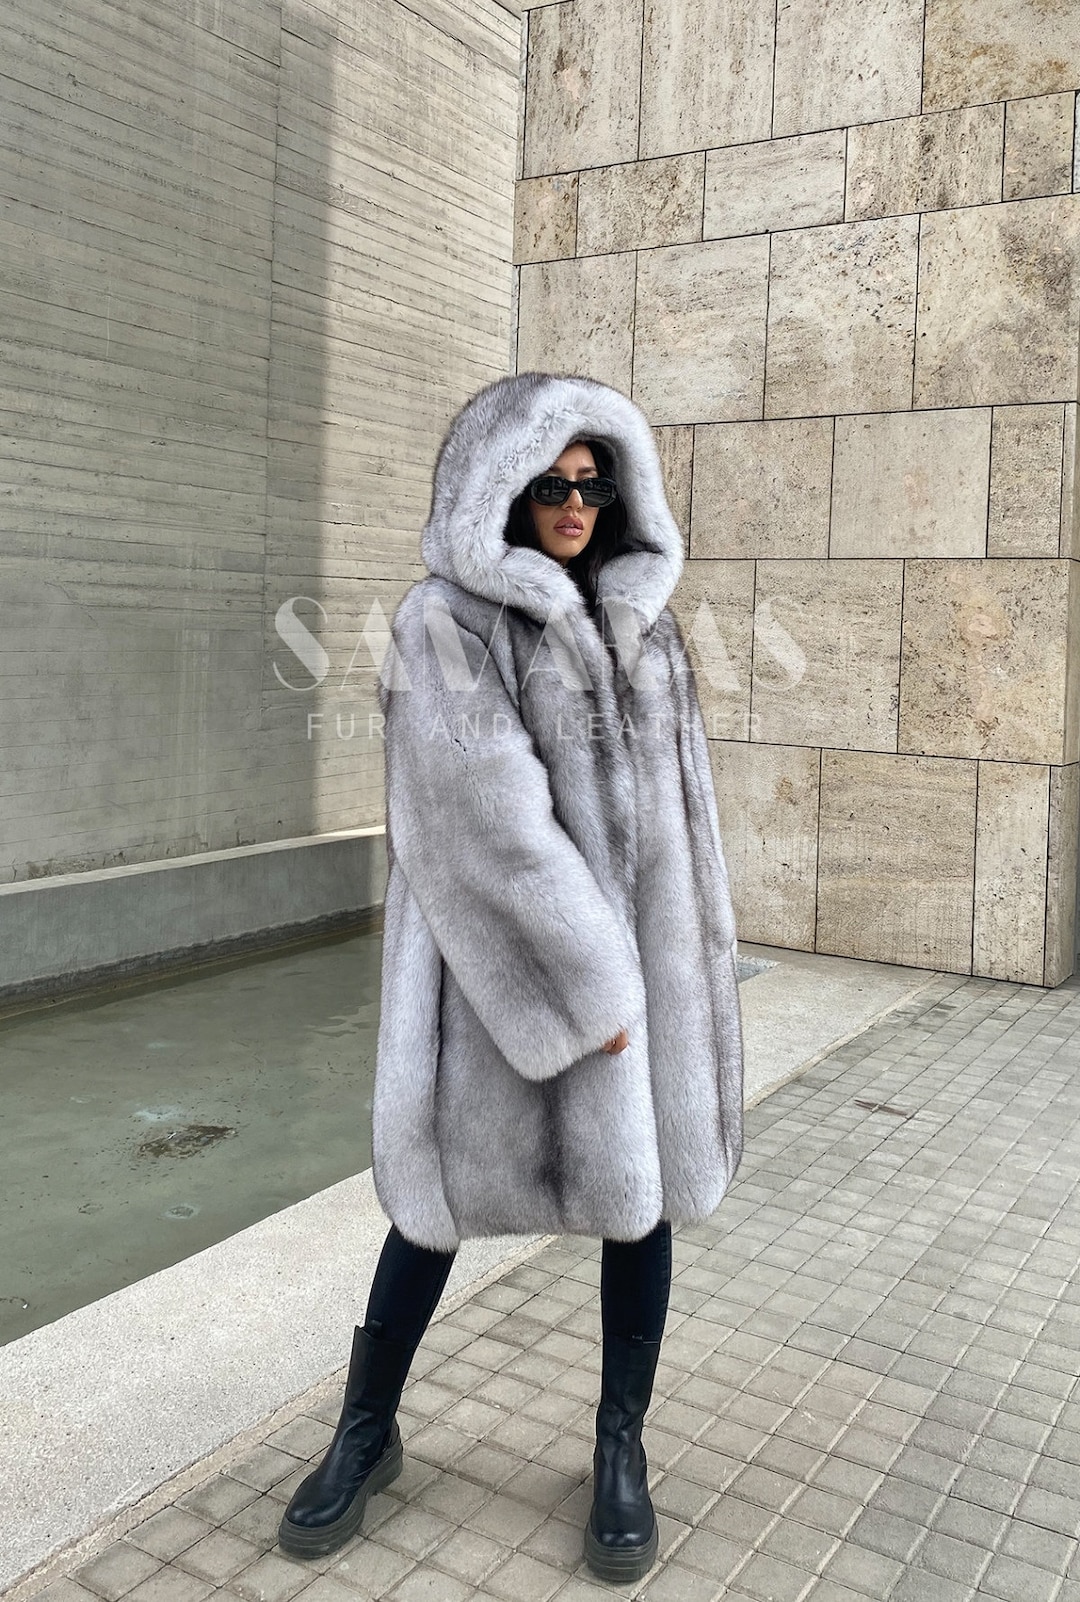 Real Fur Jacket/ Genuine Full Skinned Mink Fur/ Real Fox Fur/ 